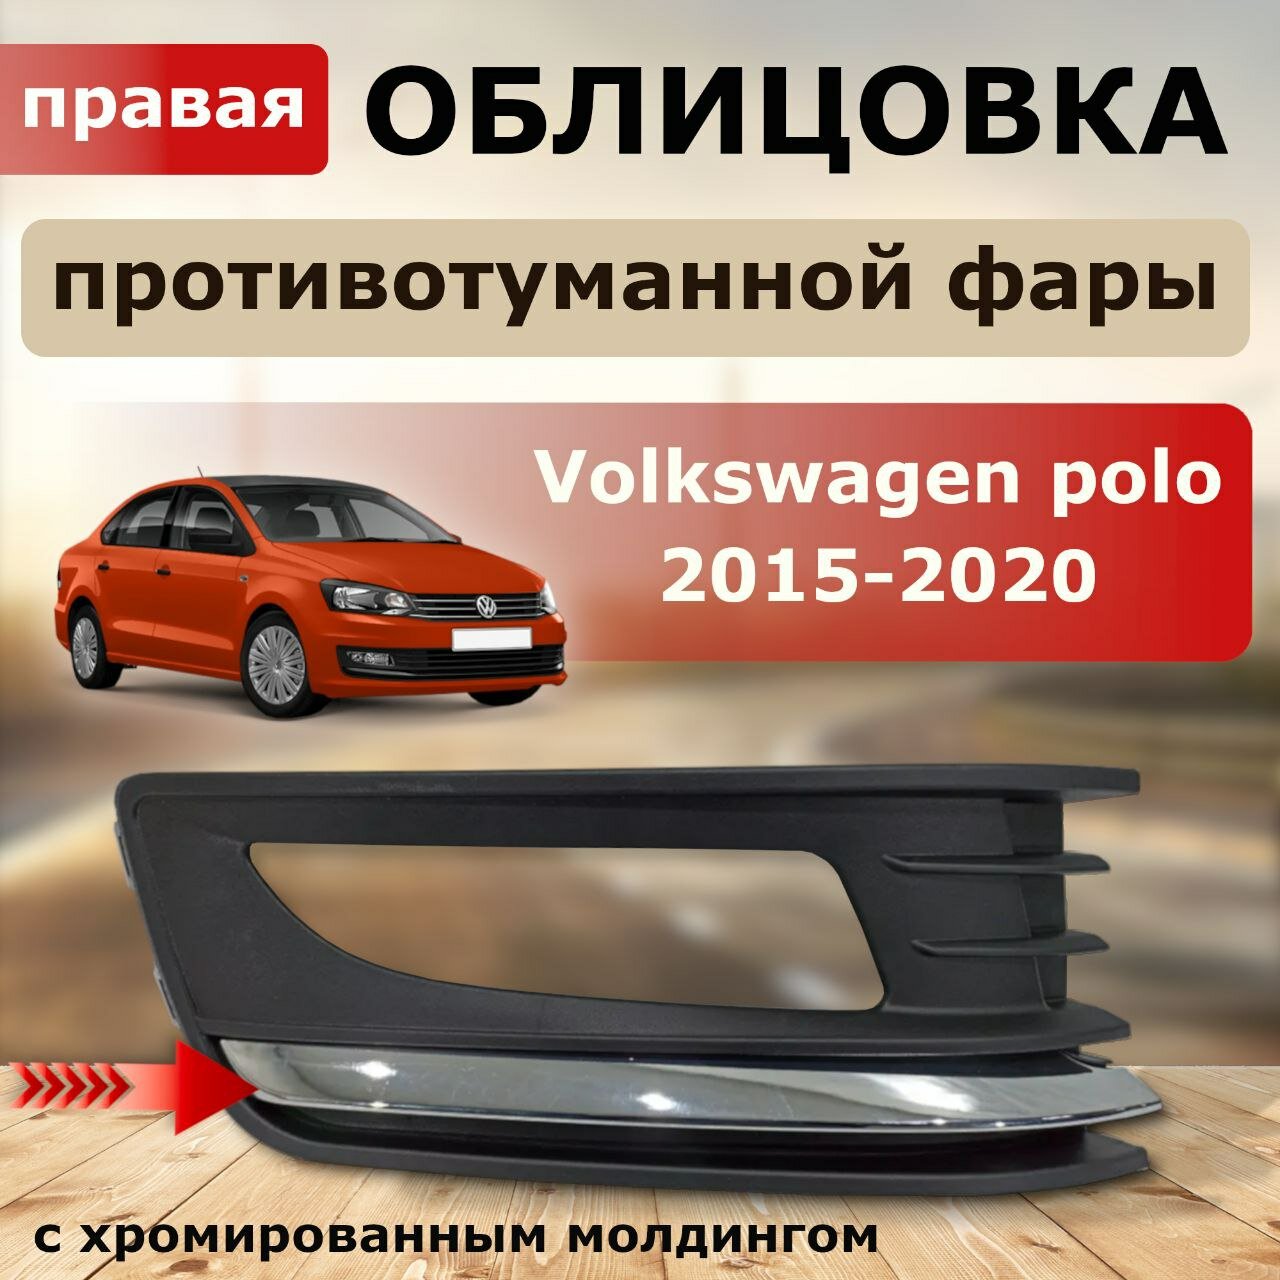 Облицовка ПТФ правая (хром вставка) для Volkswagen polo 2015-2020